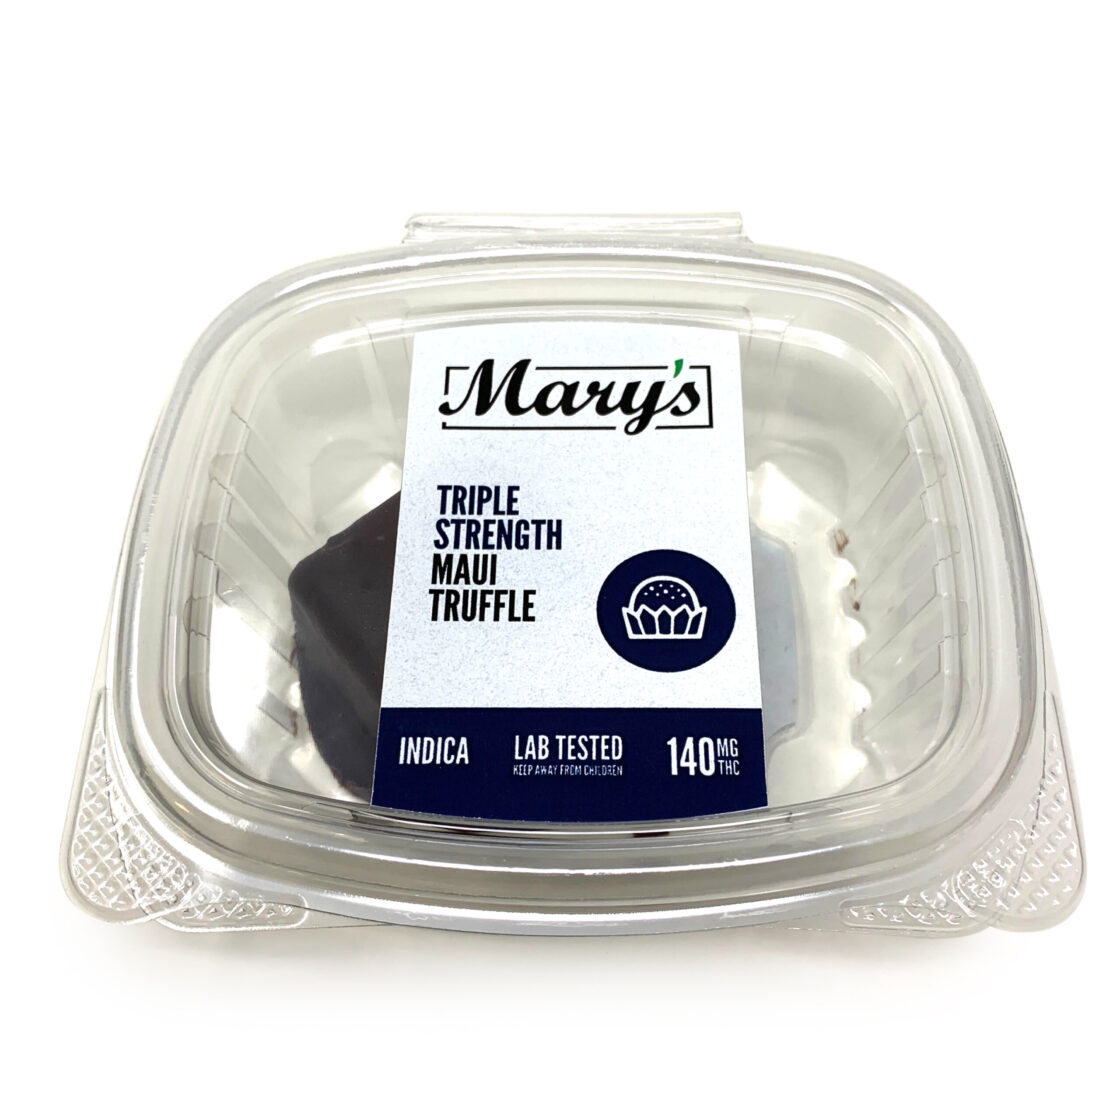 Mary’s – Maui Truffle (140mg)